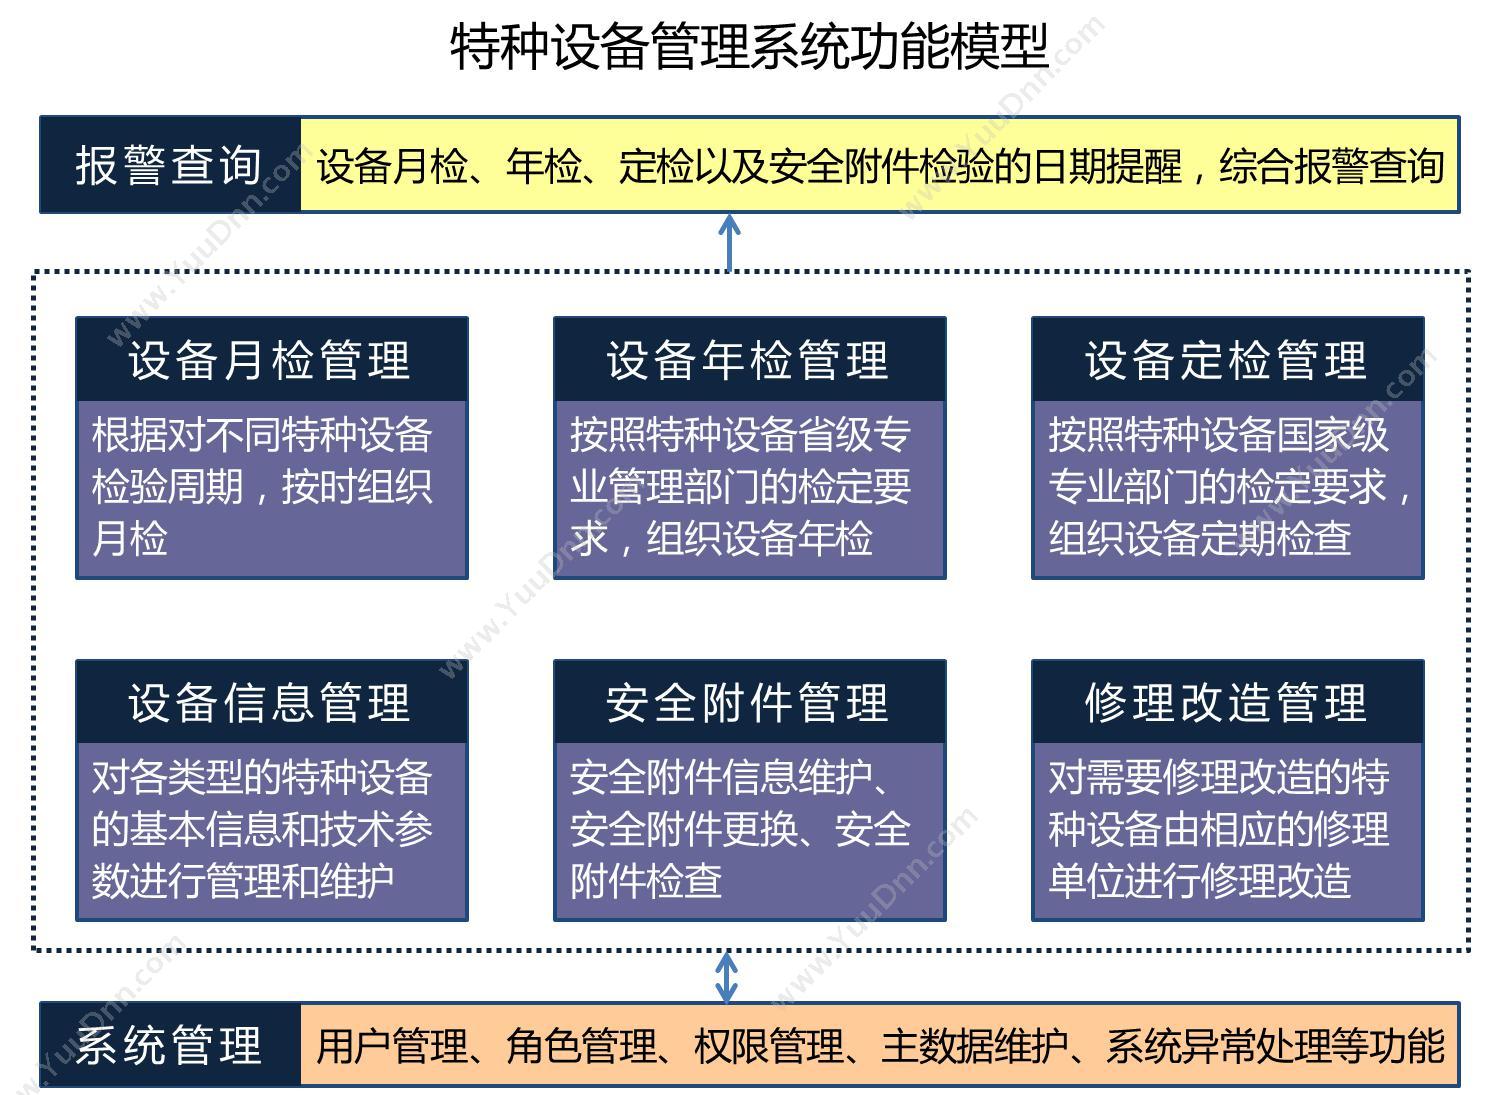 北京速力科技有限公司 特种设备管理系统 制造加工